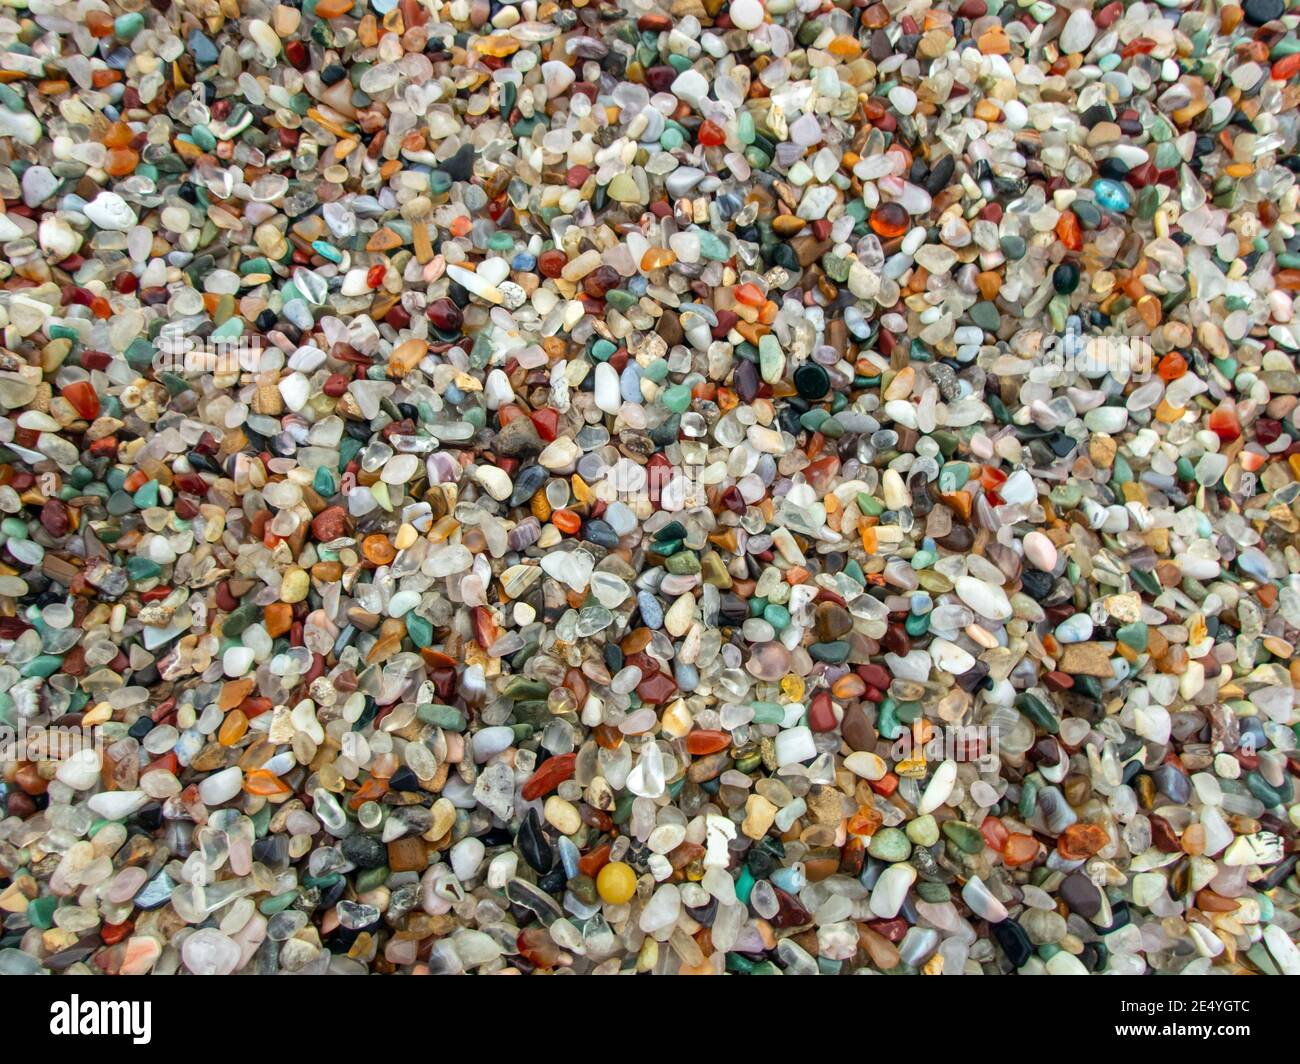 Ein Haufen voller kleiner Achatsteine macht einen ziemlich bunten Hintergrund oder Hintergrund mit viel Farbe, Formen und Größen. Leichter Bokeh-Effekt. Stockfoto